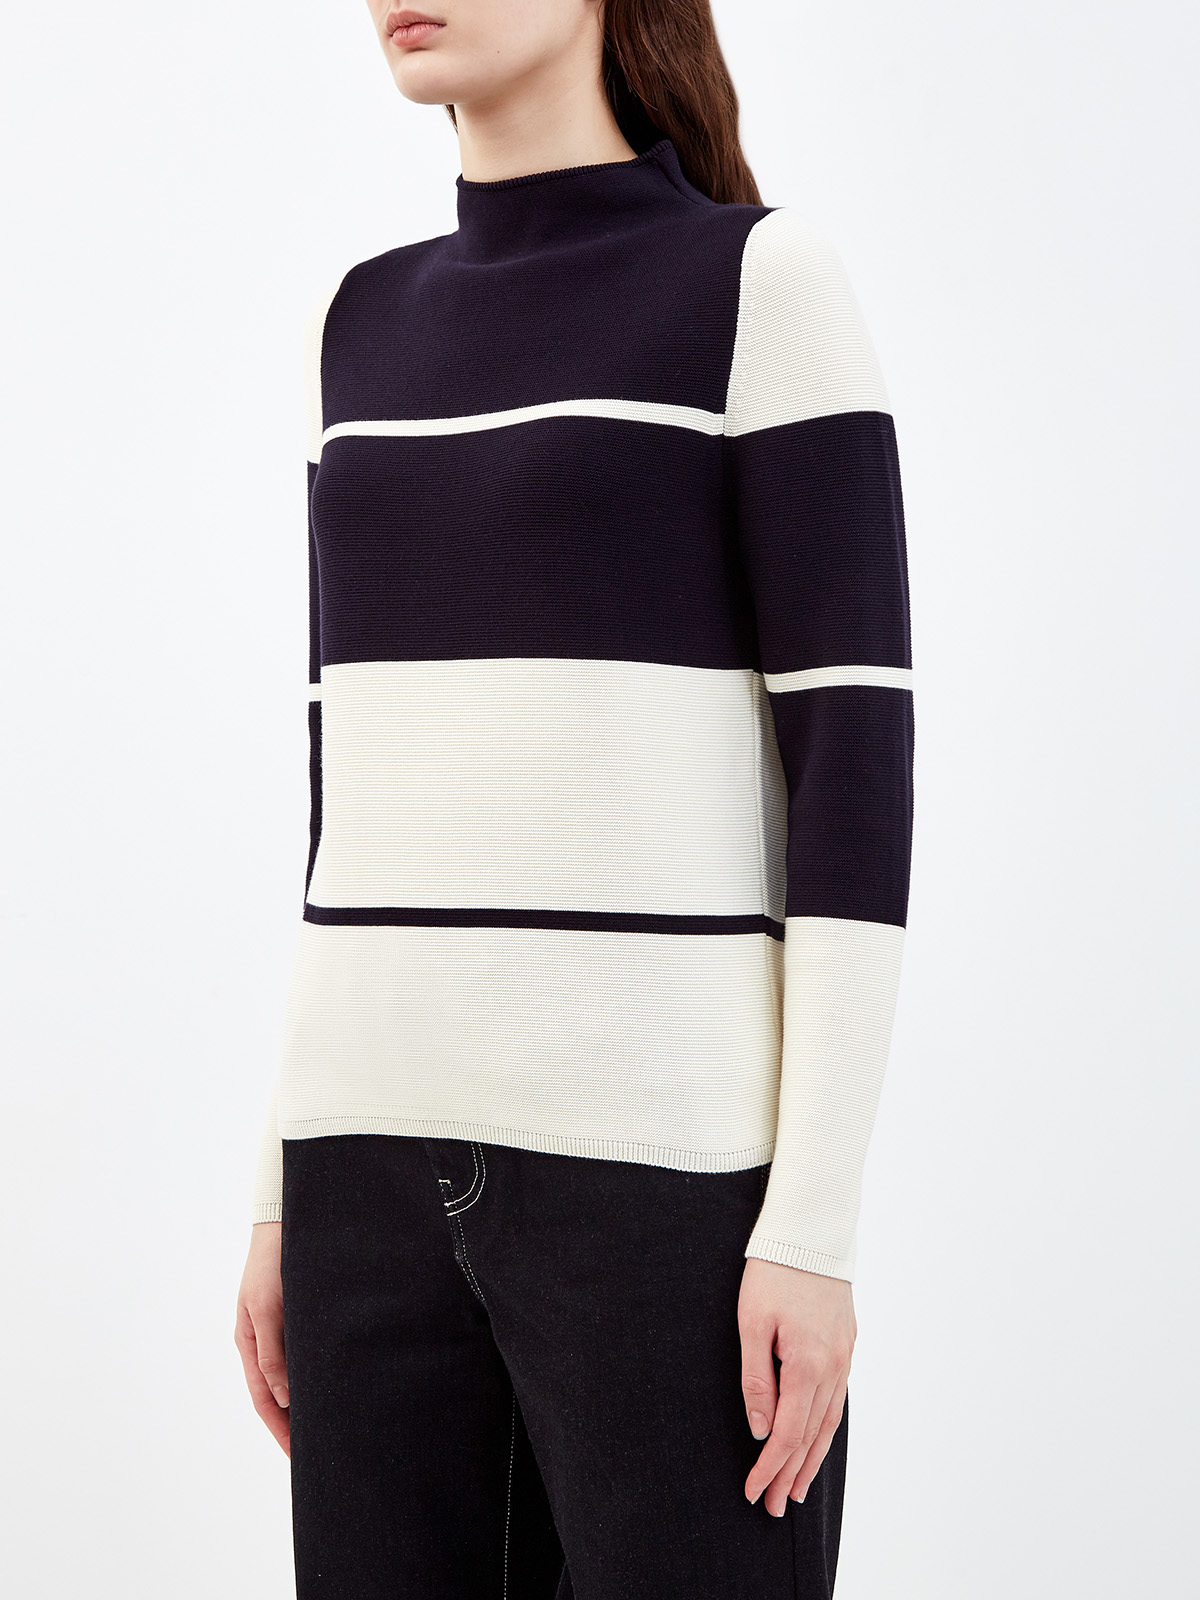 Пуловер из хлопковой пряжи в стиле colorblock LORENA ANTONIAZZI, цвет черно-белый, размер 40 - фото 3